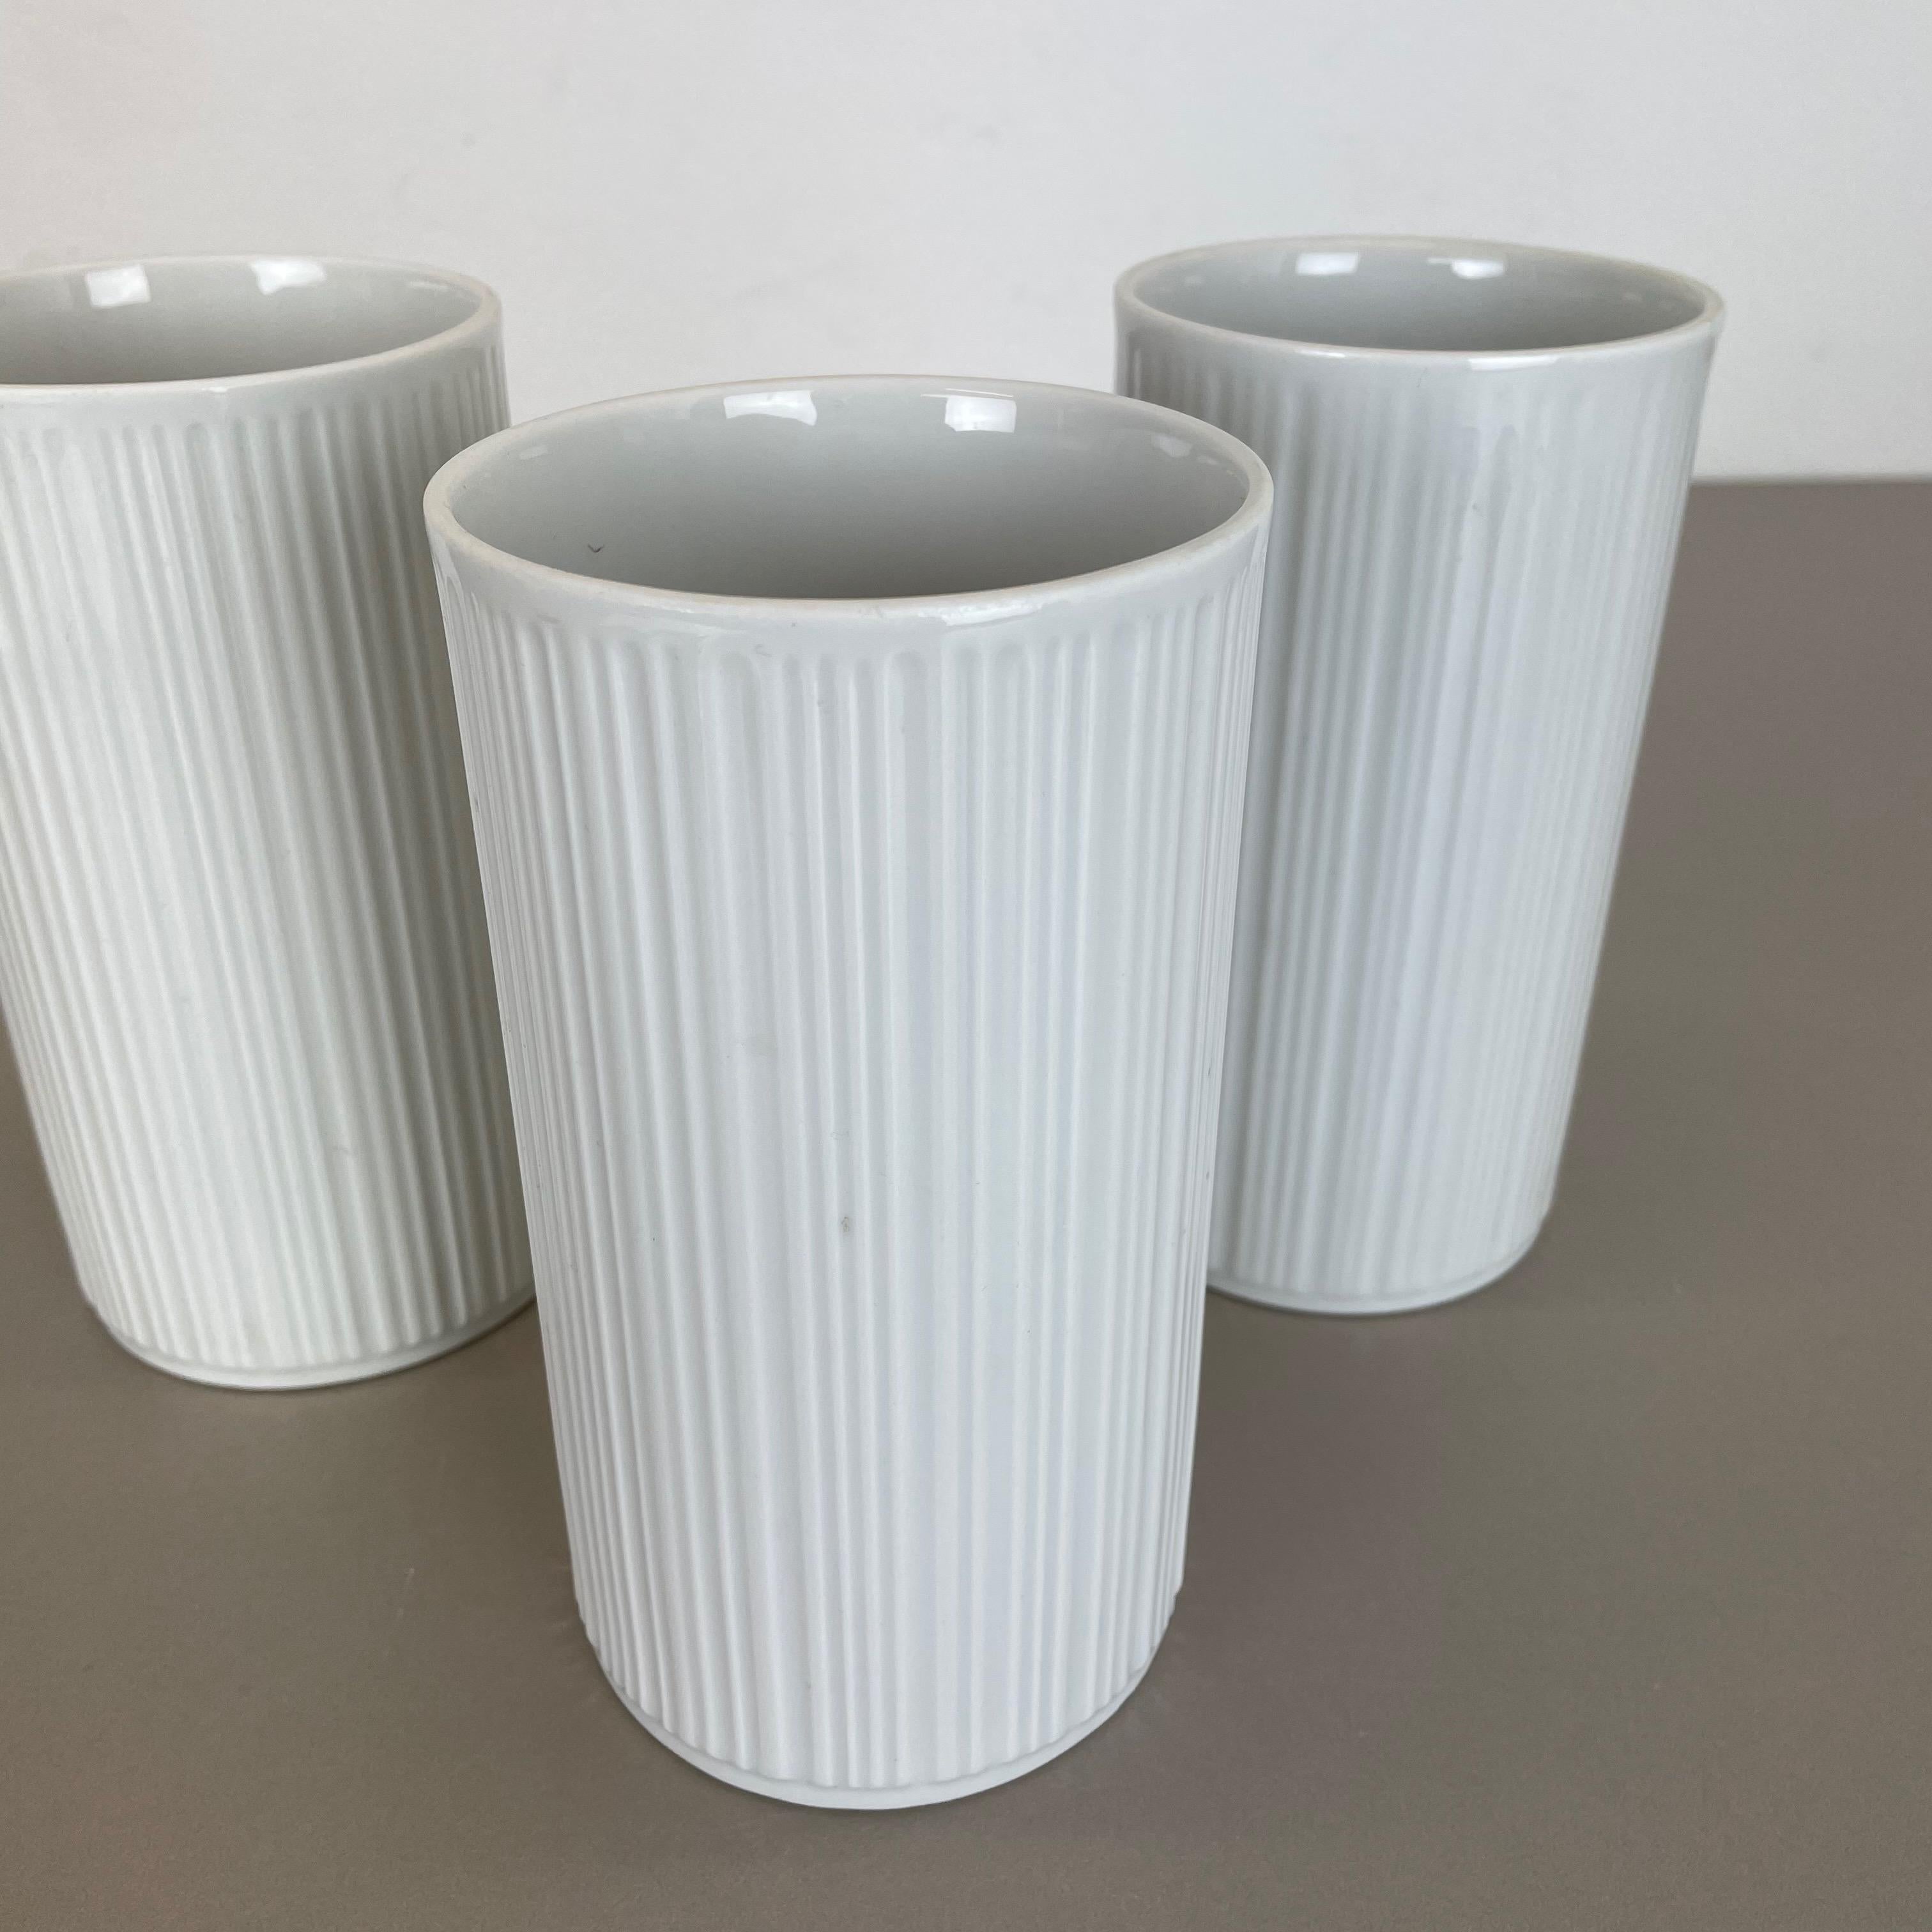 Set of 3 OP Art Porcelain Vases by Melitta Minden, Germany, 1970s For Sale 7